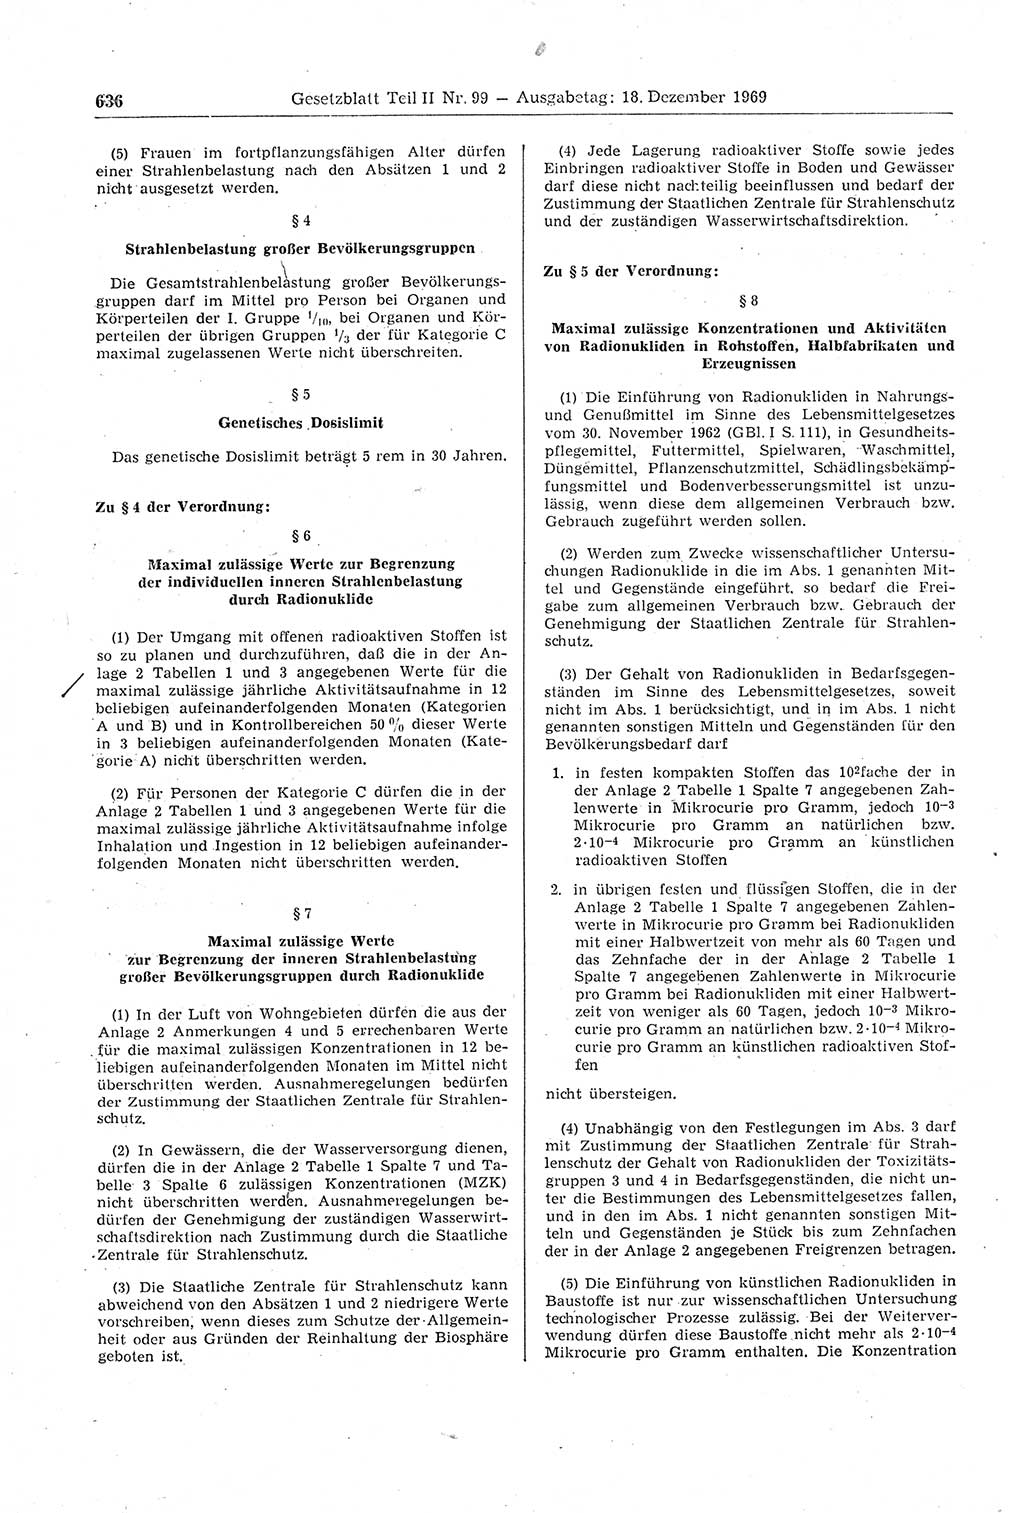 Gesetzblatt (GBl.) der Deutschen Demokratischen Republik (DDR) Teil ⅠⅠ 1969, Seite 636 (GBl. DDR ⅠⅠ 1969, S. 636)